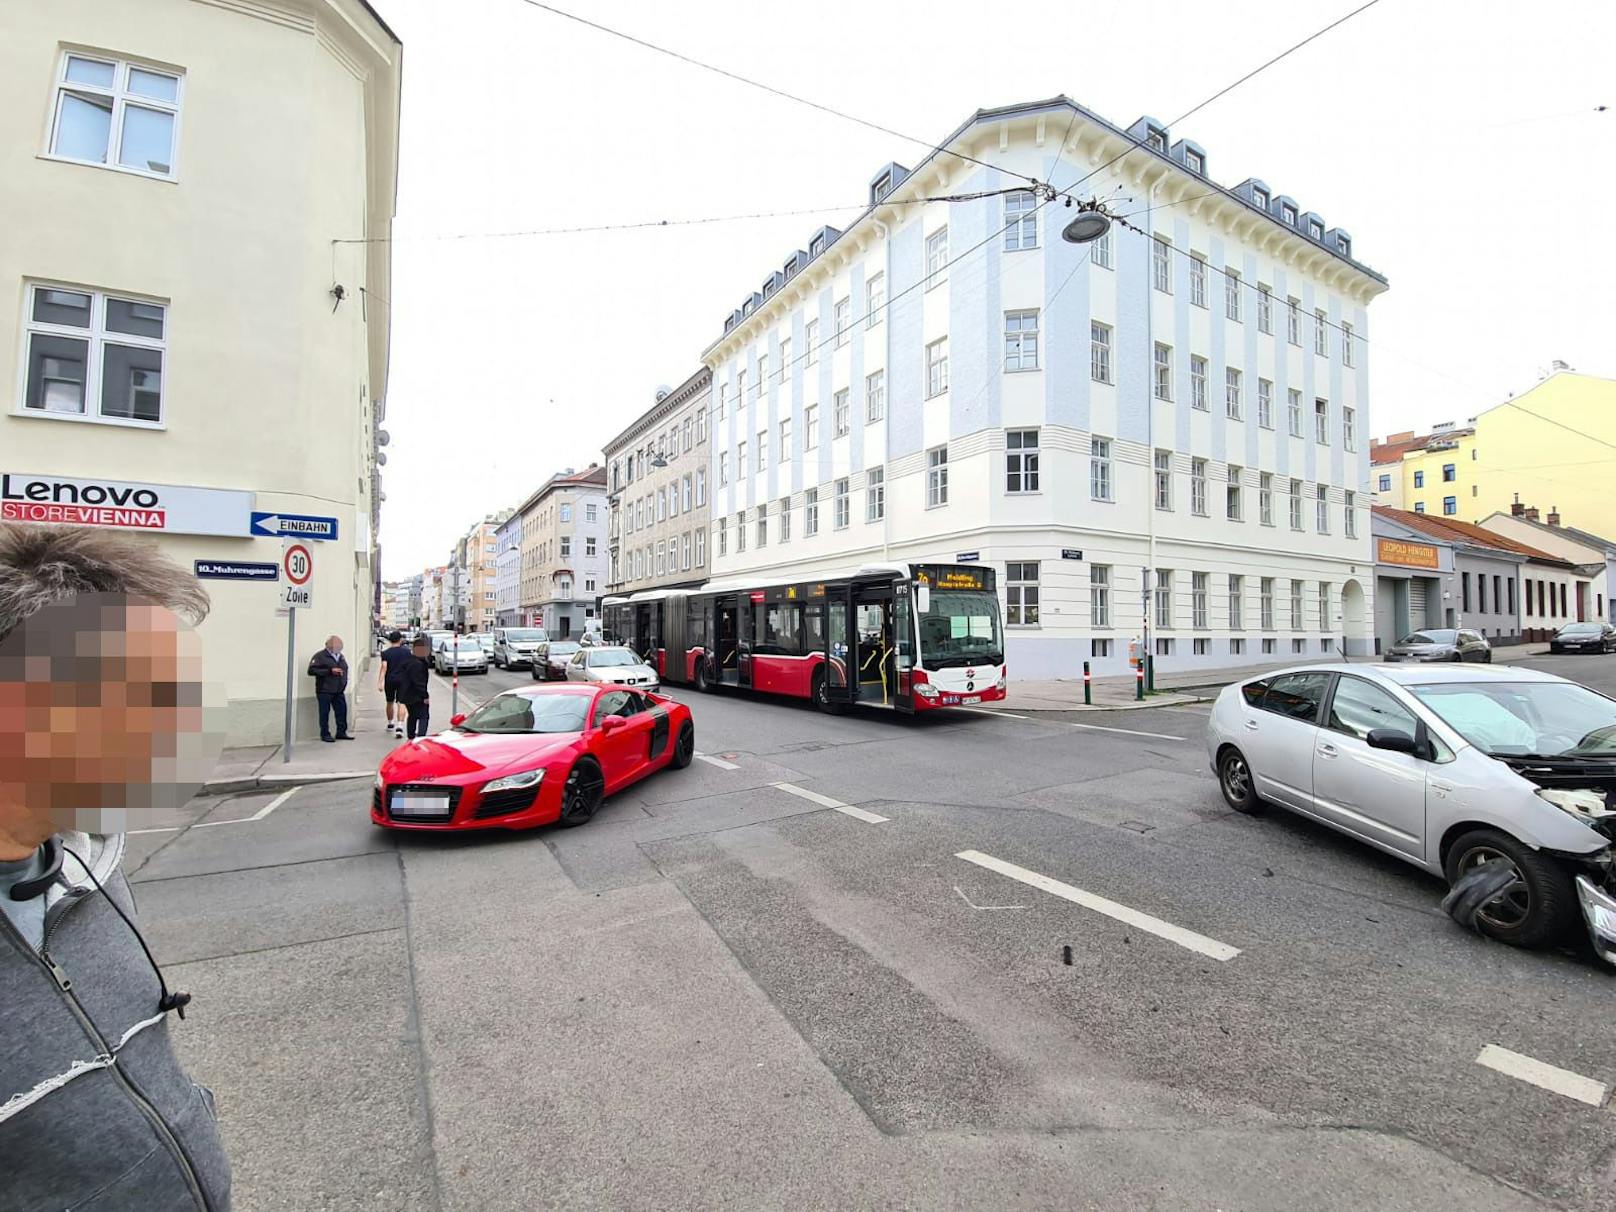 In Wien kam es am Donnerstag zu einem Unfall.